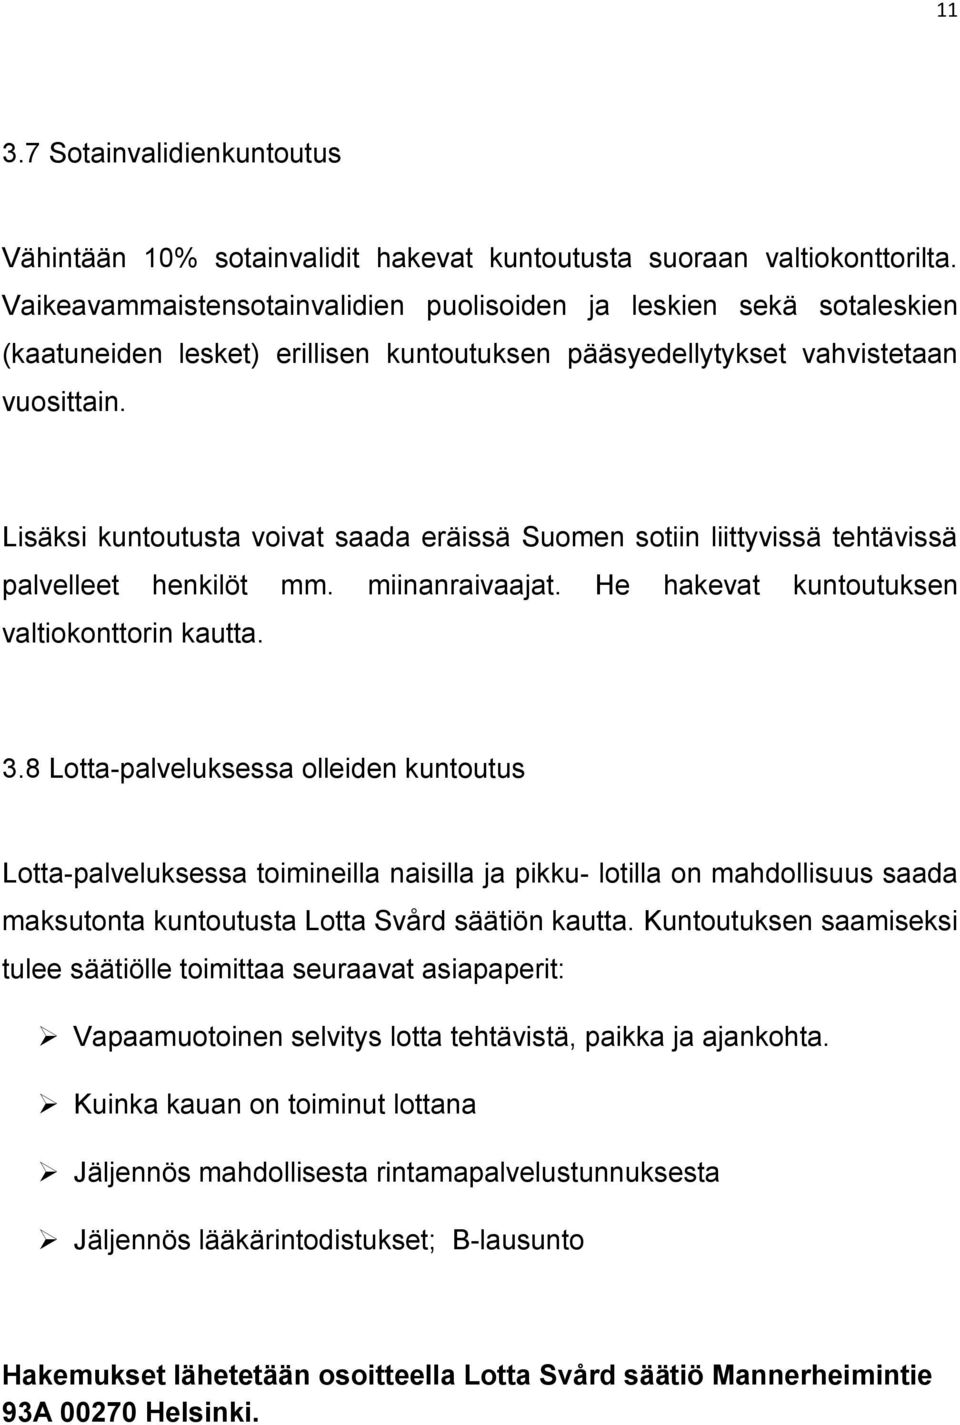 Lisäksi kuntoutusta voivat saada eräissä Suomen sotiin liittyvissä tehtävissä palvelleet henkilöt mm. miinanraivaajat. He hakevat kuntoutuksen valtiokonttorin kautta. 3.